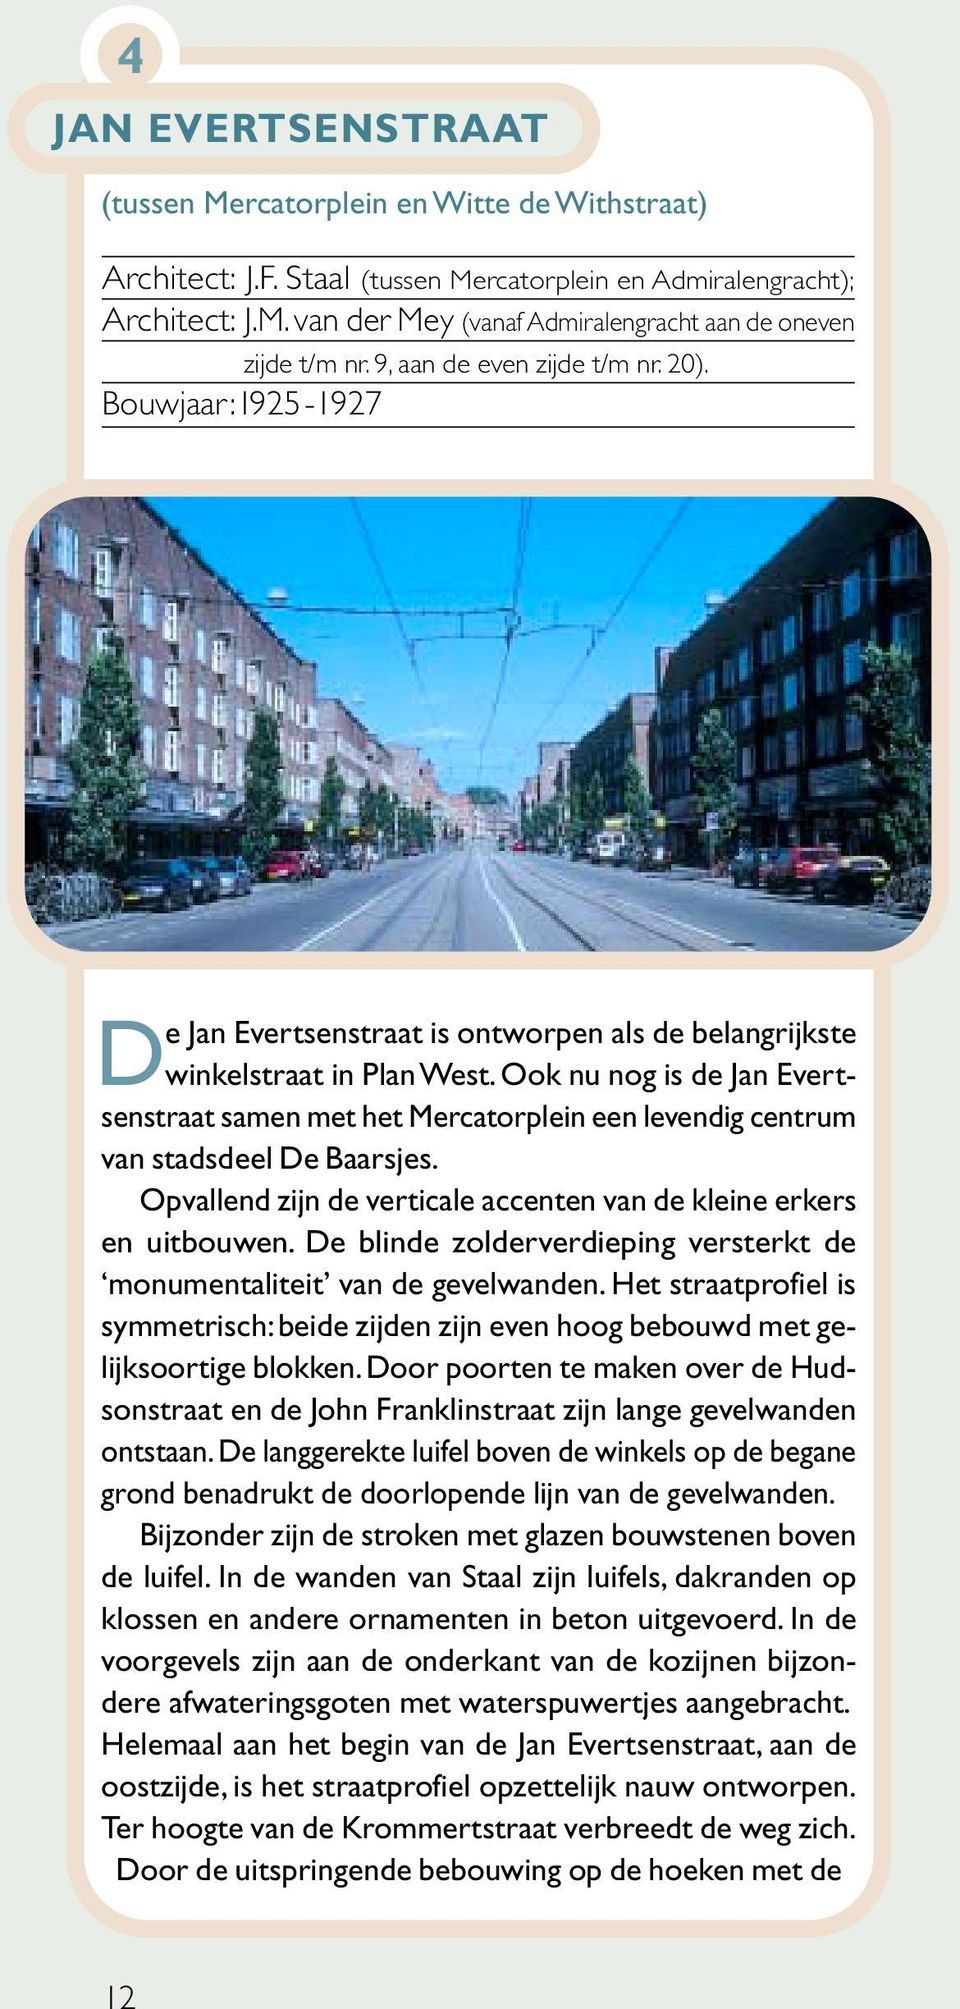 Ook nu nog is de Jan Evertsenstraat samen met het Mercatorplein een levendig centrum van stadsdeel De Baarsjes. Opvallend zijn de verticale accenten van de kleine erkers en uitbouwen.